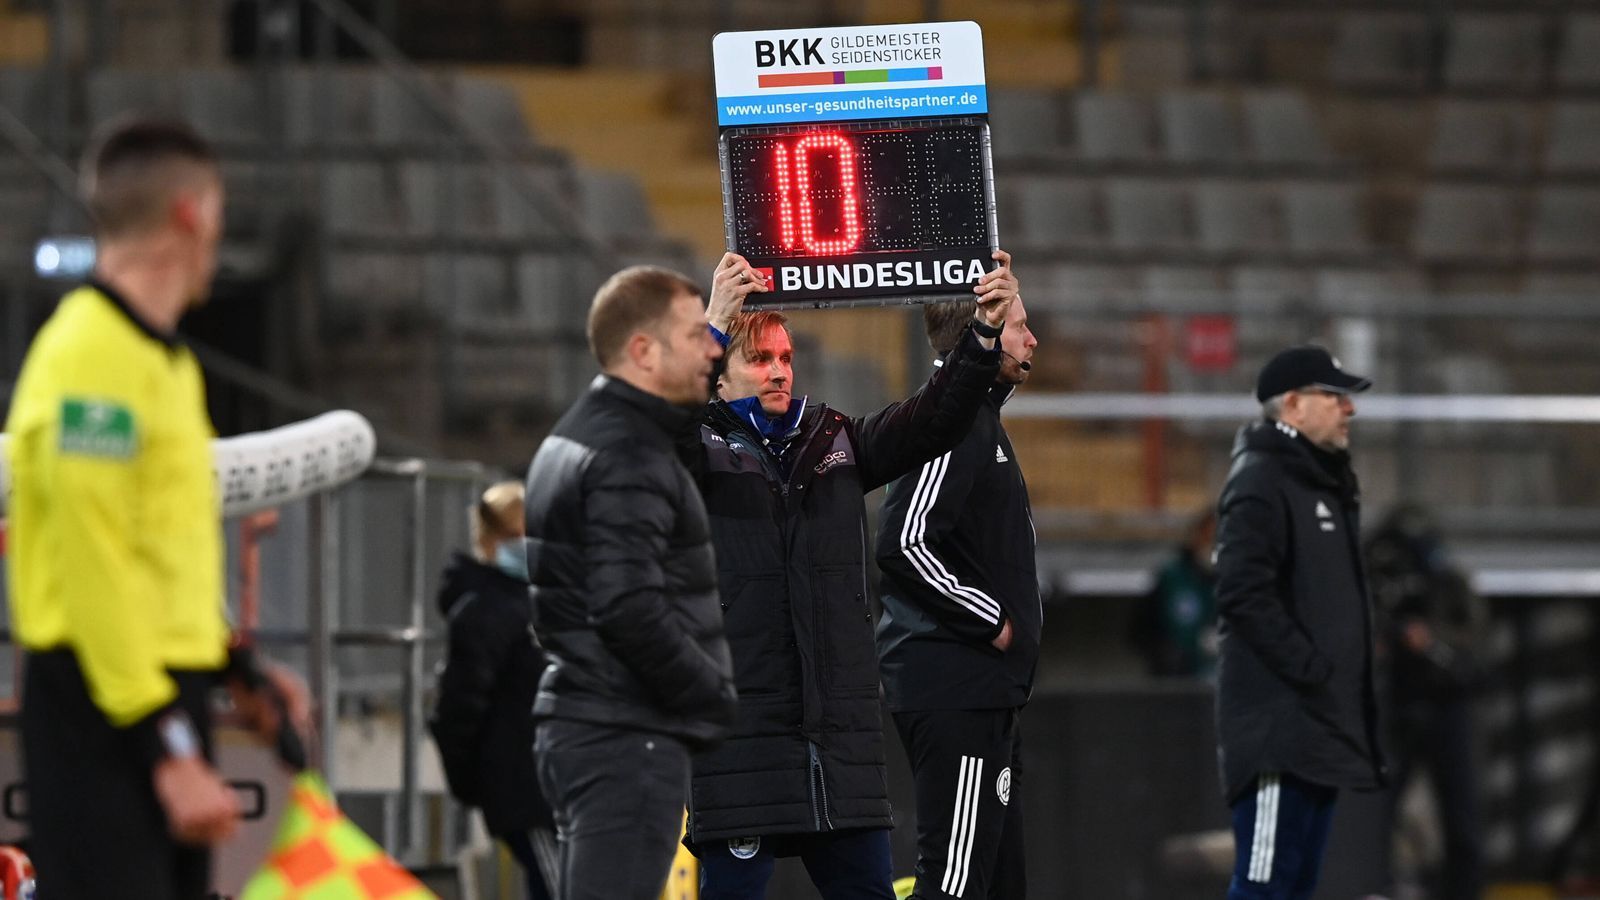 
                <strong>Das schmerzvolle Bundesliga-Duell Bielefeld vs. Union</strong><br>
                Weil das Spiel vor allem wegen des ersten Zusammenpralls zwischen Luthe und Ryerson lange unterbrochen war, gab es in der ersten Halbzeit letztlich zehn Minuten Nachspielzeit. 
              